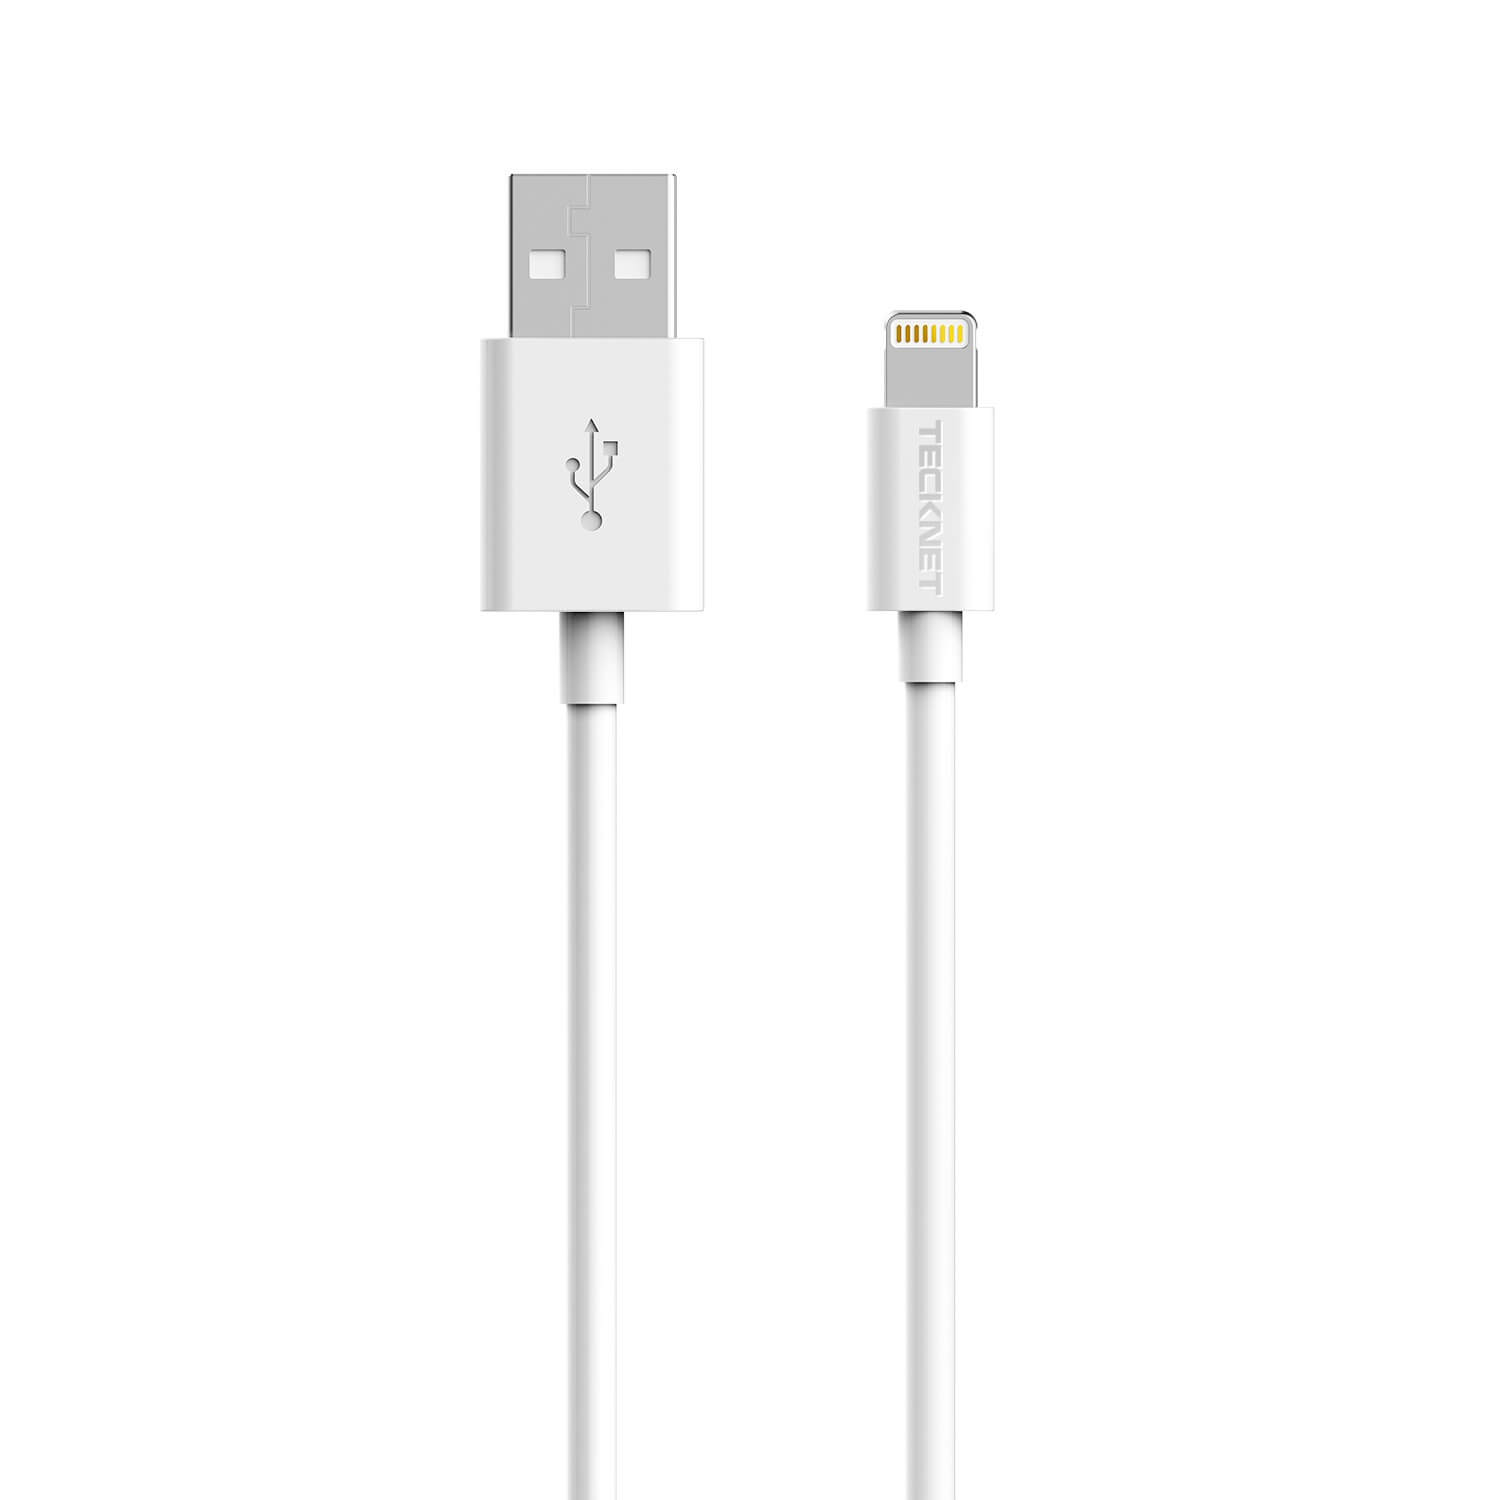 Usb apple iphone. Кабель Apple USB‑C/Lightning (1 м). Кабель Lightning Apple Lightning to USB Cable (2m). Кабель USB - Lightning Apple iphone Original 1.0 м White 869036. Лайтинг 3.0 юсб кабель.